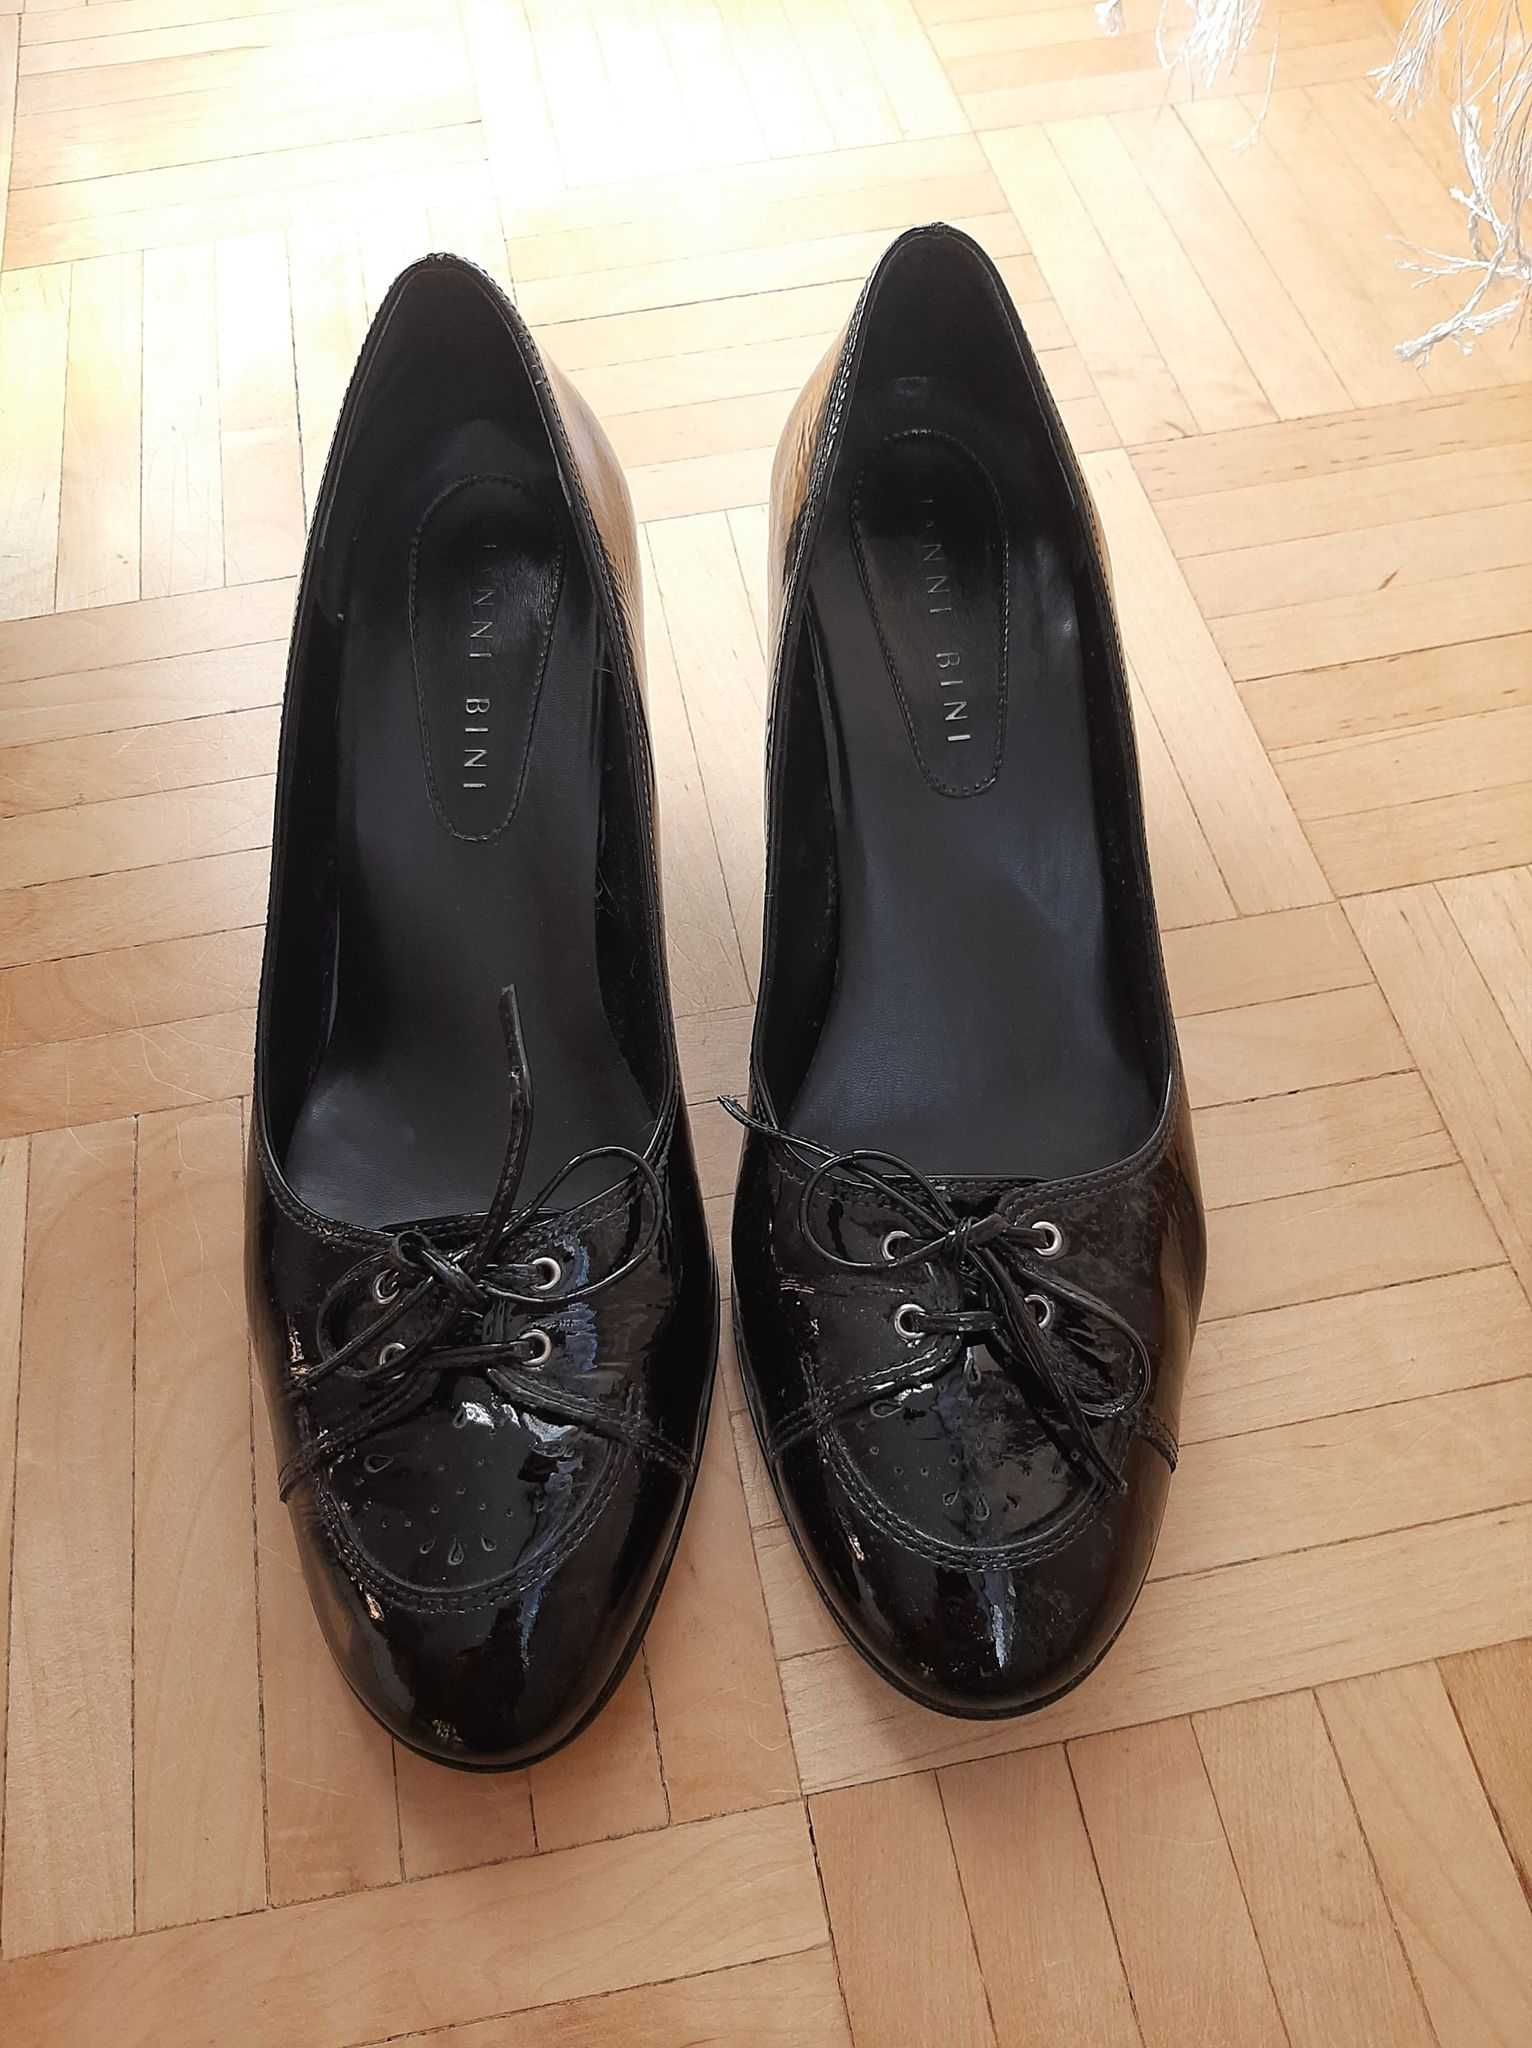 Skórzane pantofle damskie czarne 39